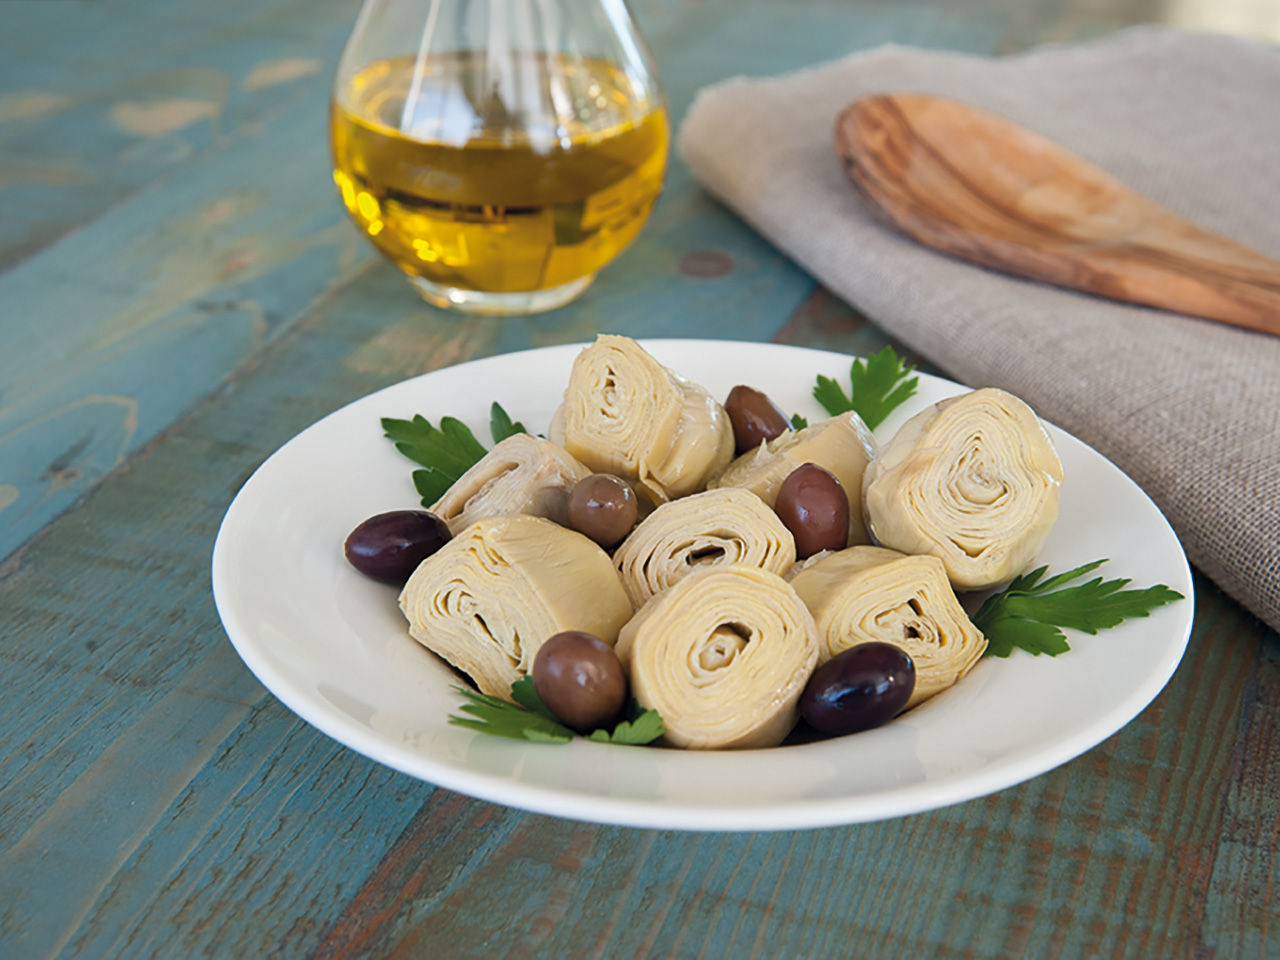 Artischockenherzen mit Oliven